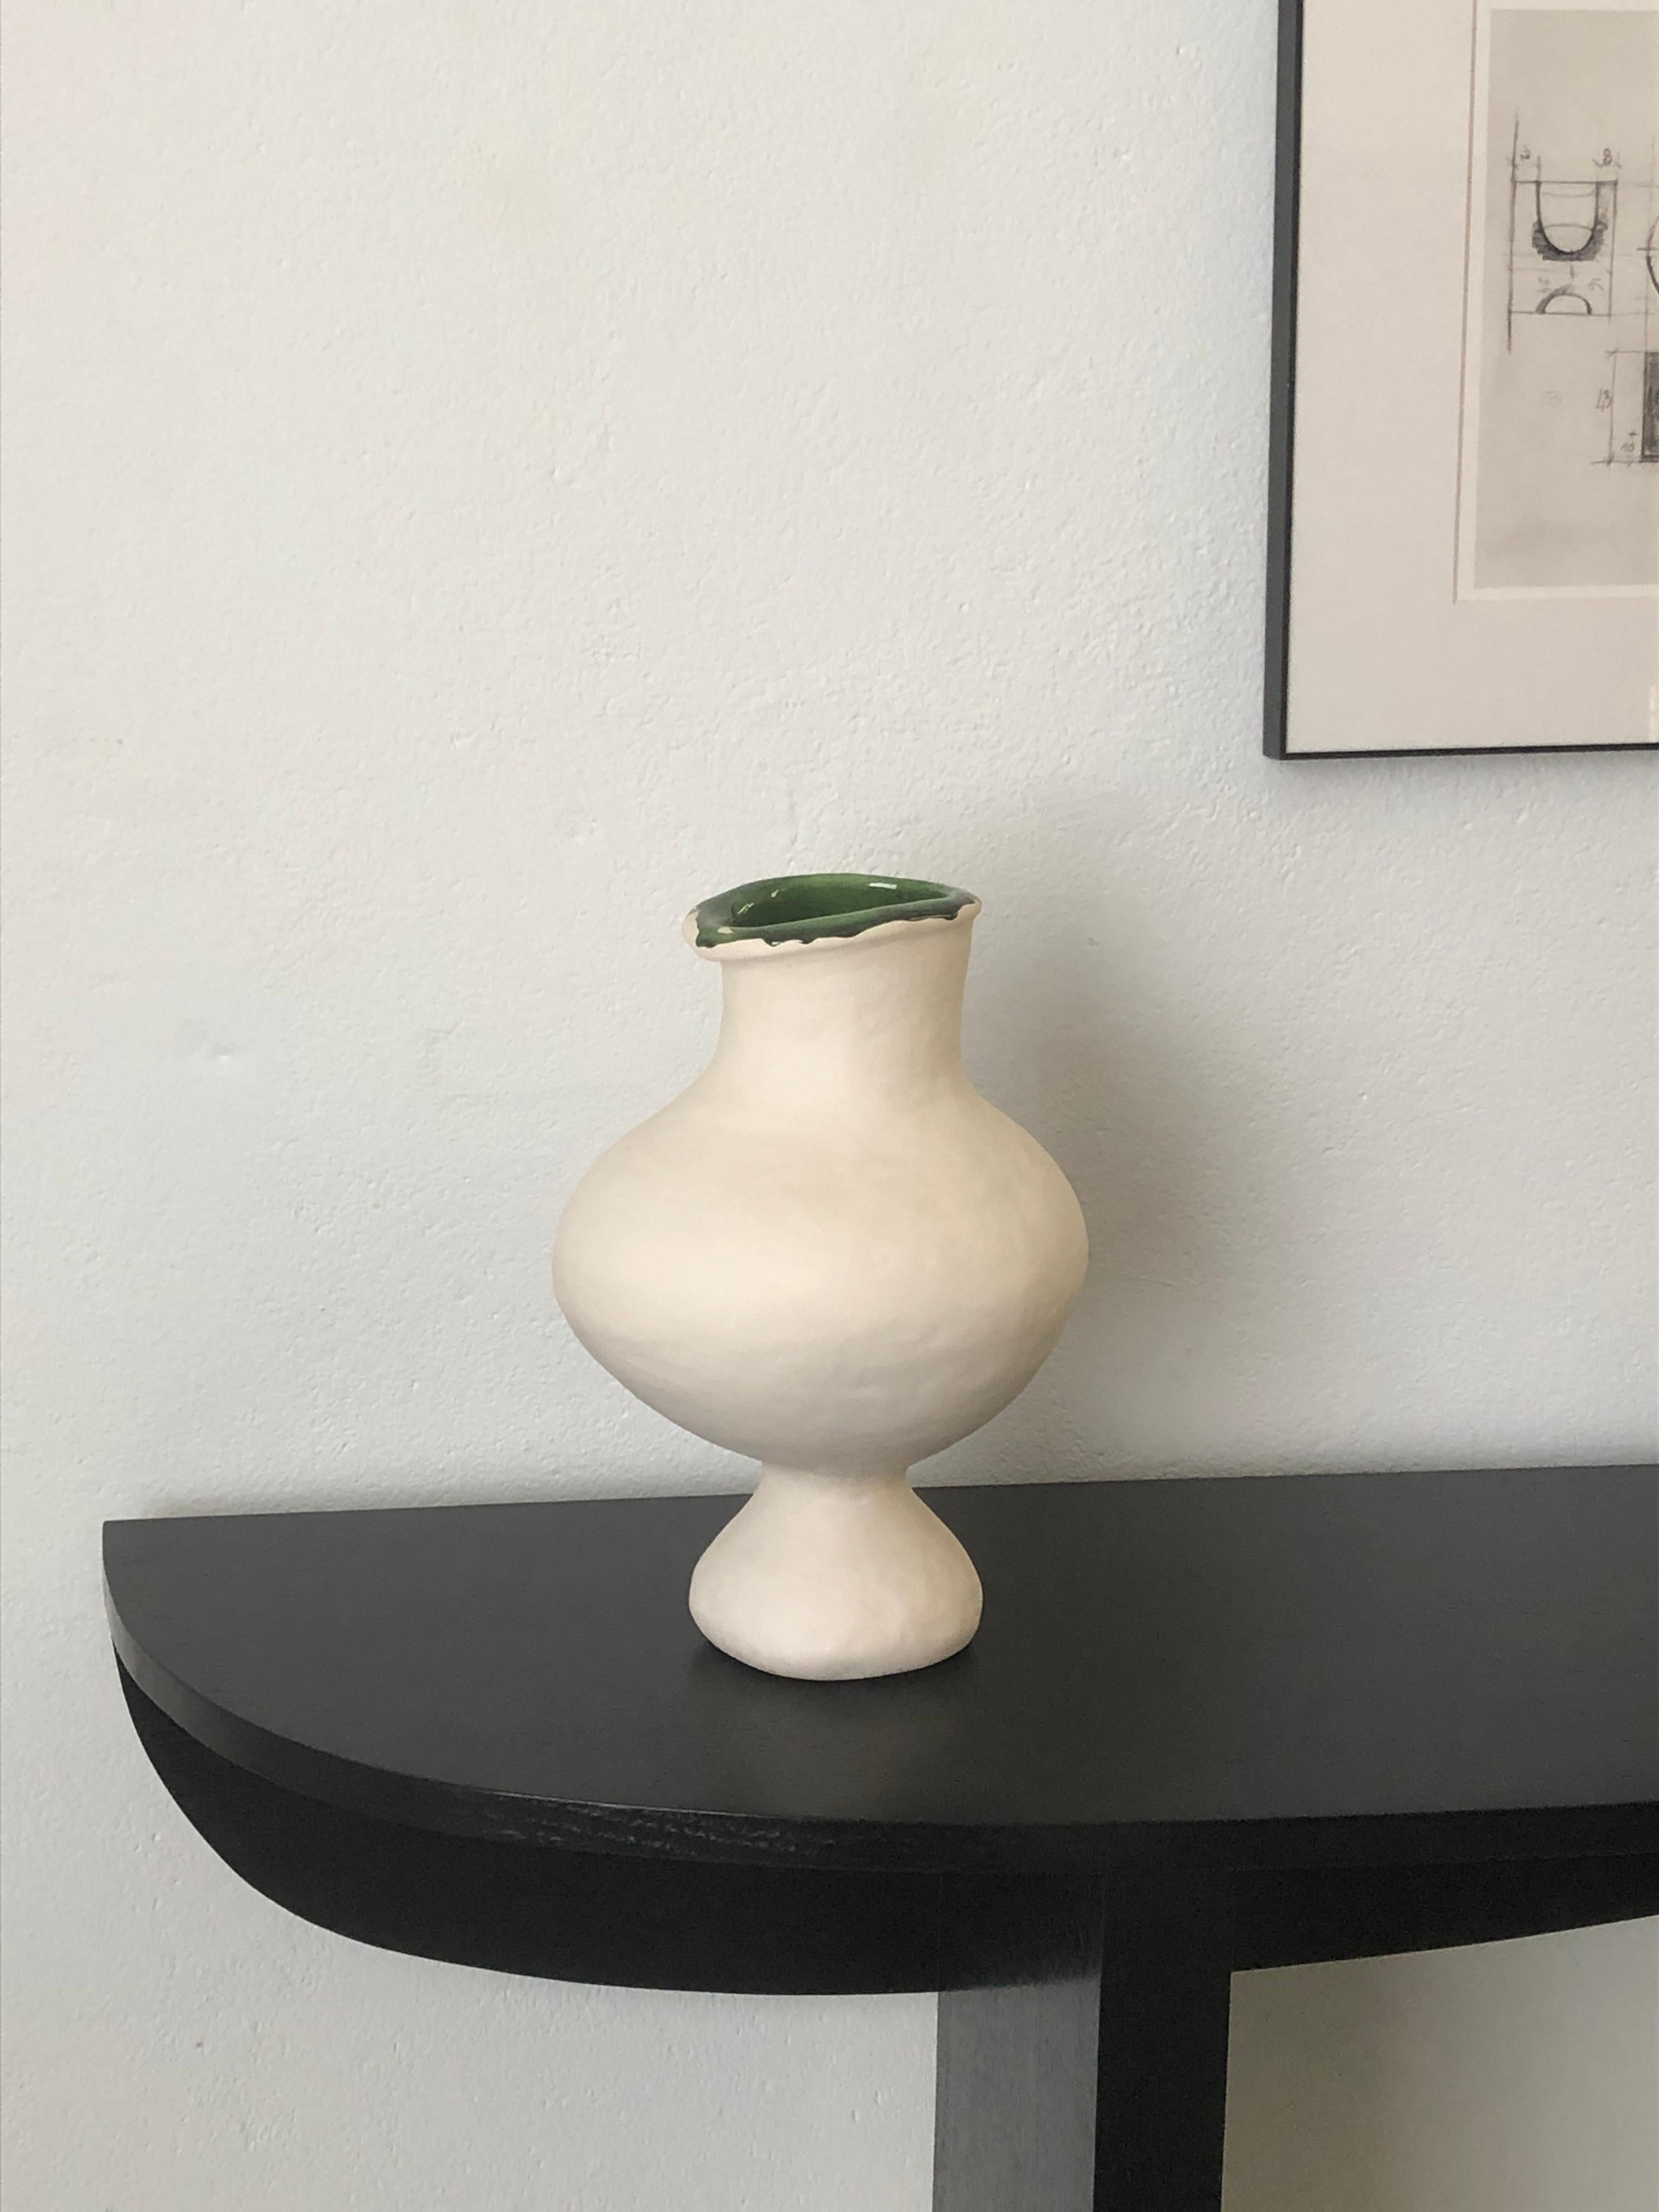 Ein skurriler Keramikkrug nach einem Picasso-Gemälde. Aus weißem Steingut mit grün glasierter Innenseite.